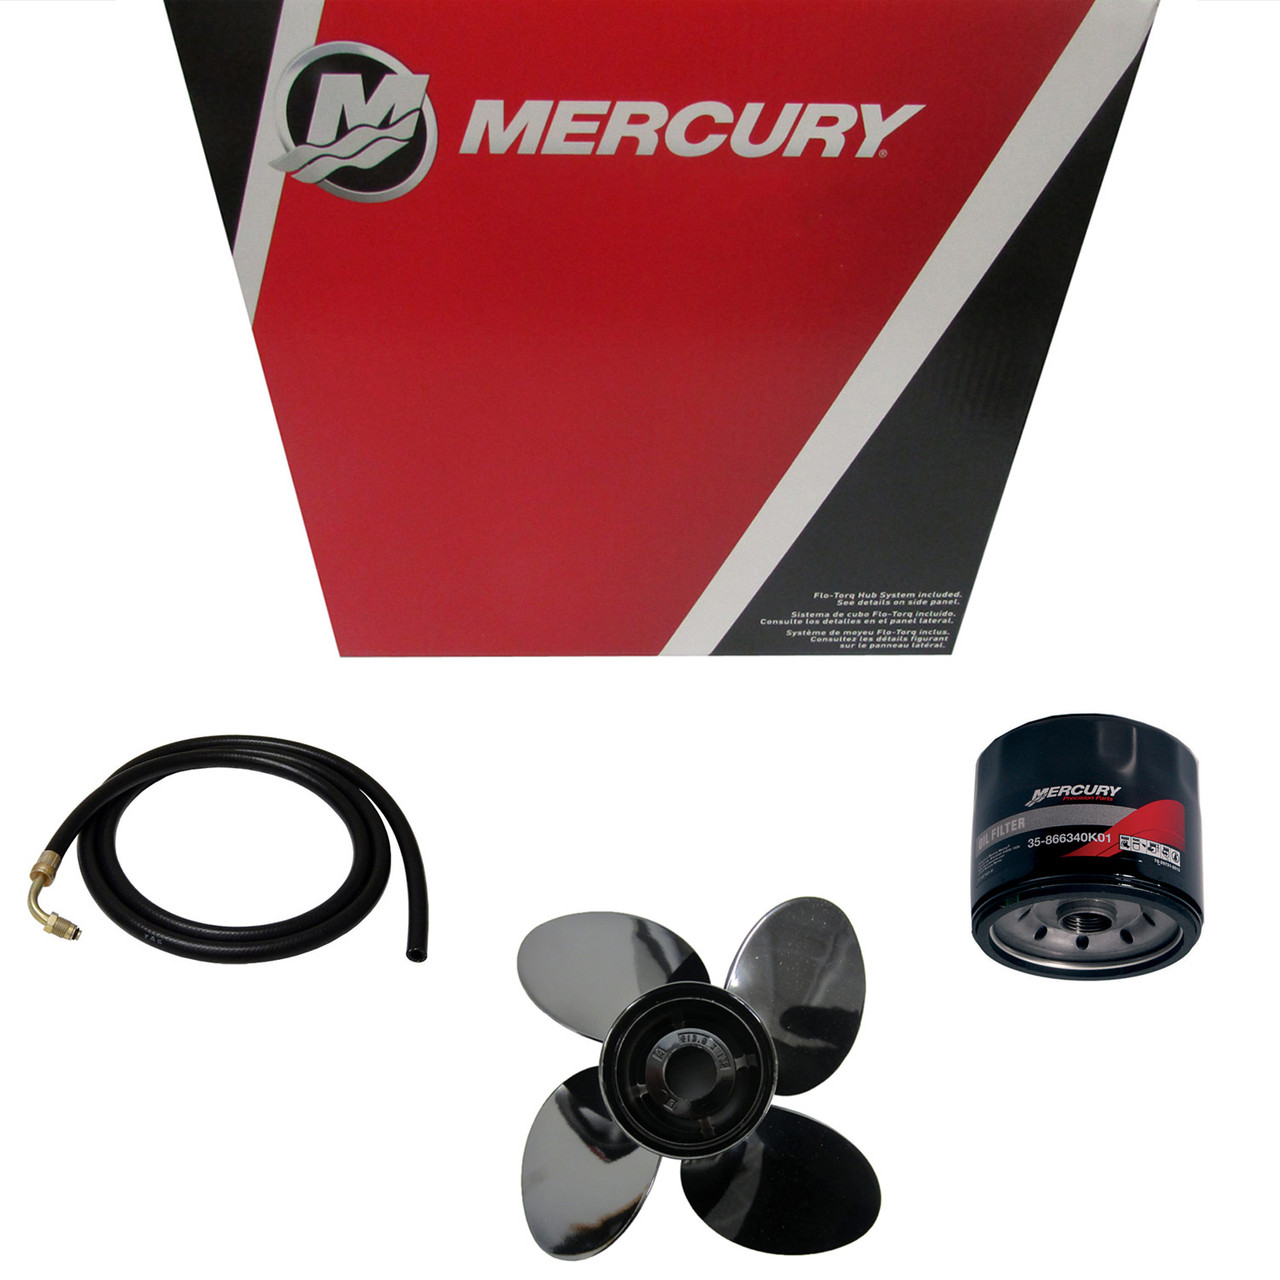 Mercury Marine / Mercruiser New OEM Thrust Washer, 12-8354677